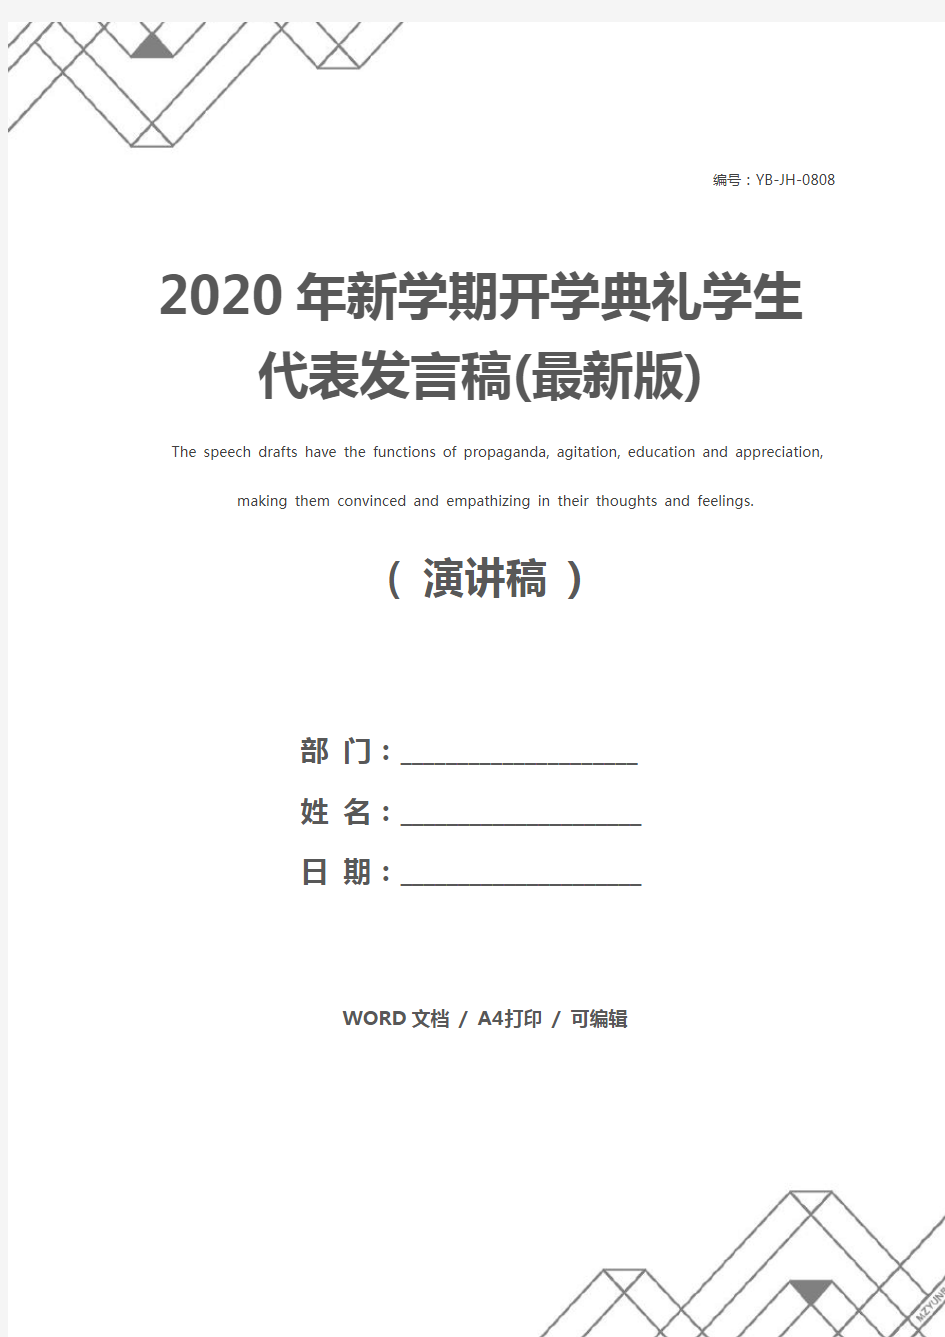 2020年新学期开学典礼学生代表发言稿(最新版)